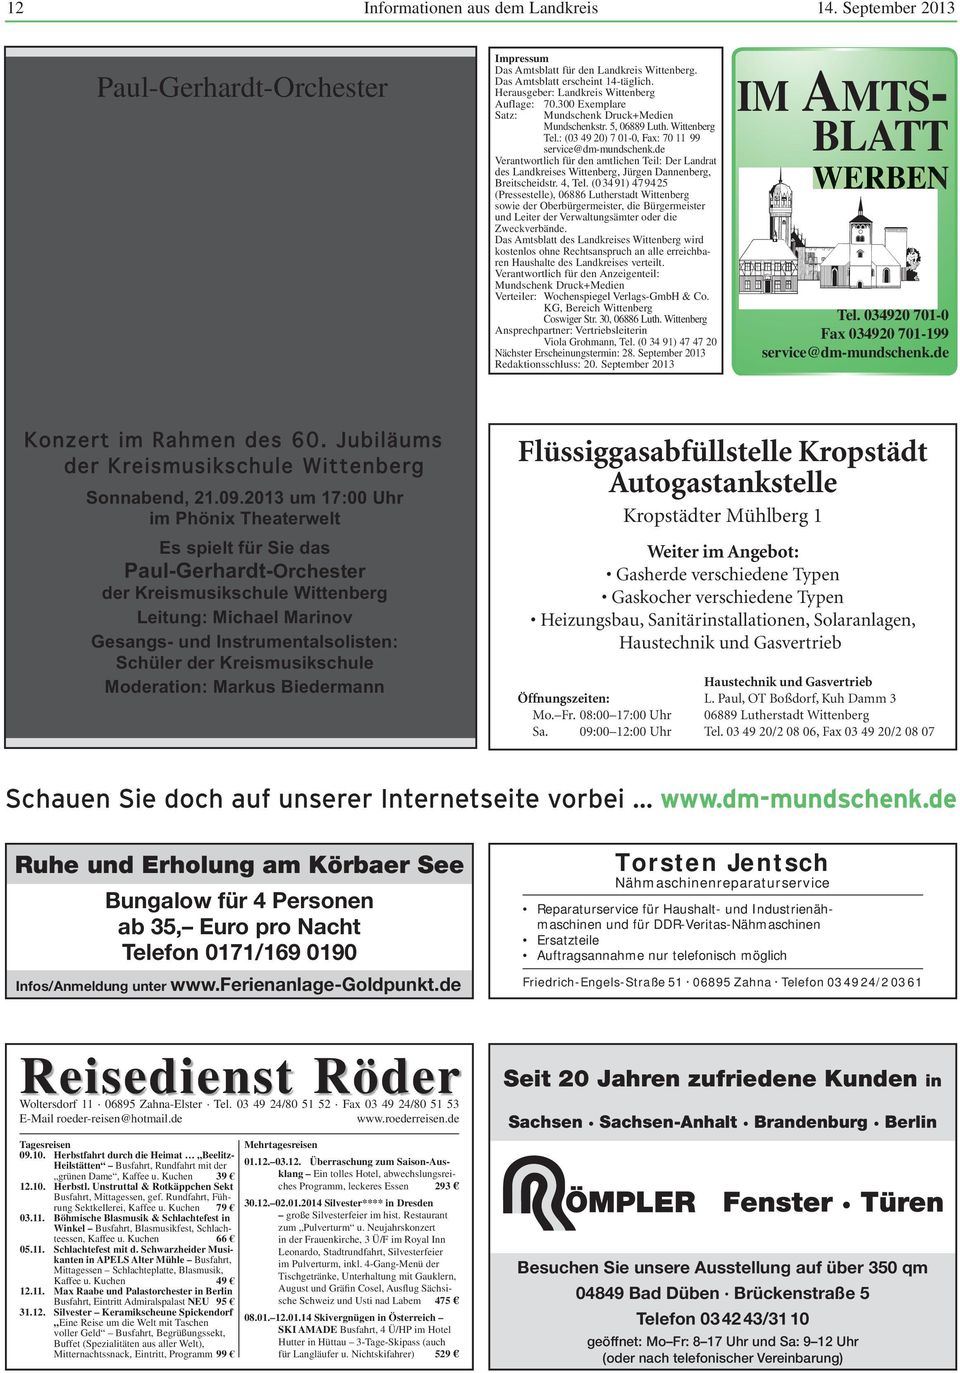 300 Exemplare Satz: Mundschenk Druck+Medien Mundschenkstr. 5, 06889 Luth. Tel.: (03 49 20) 7 01-0, Fax: 70 11 99 service@dm-mundschenk.